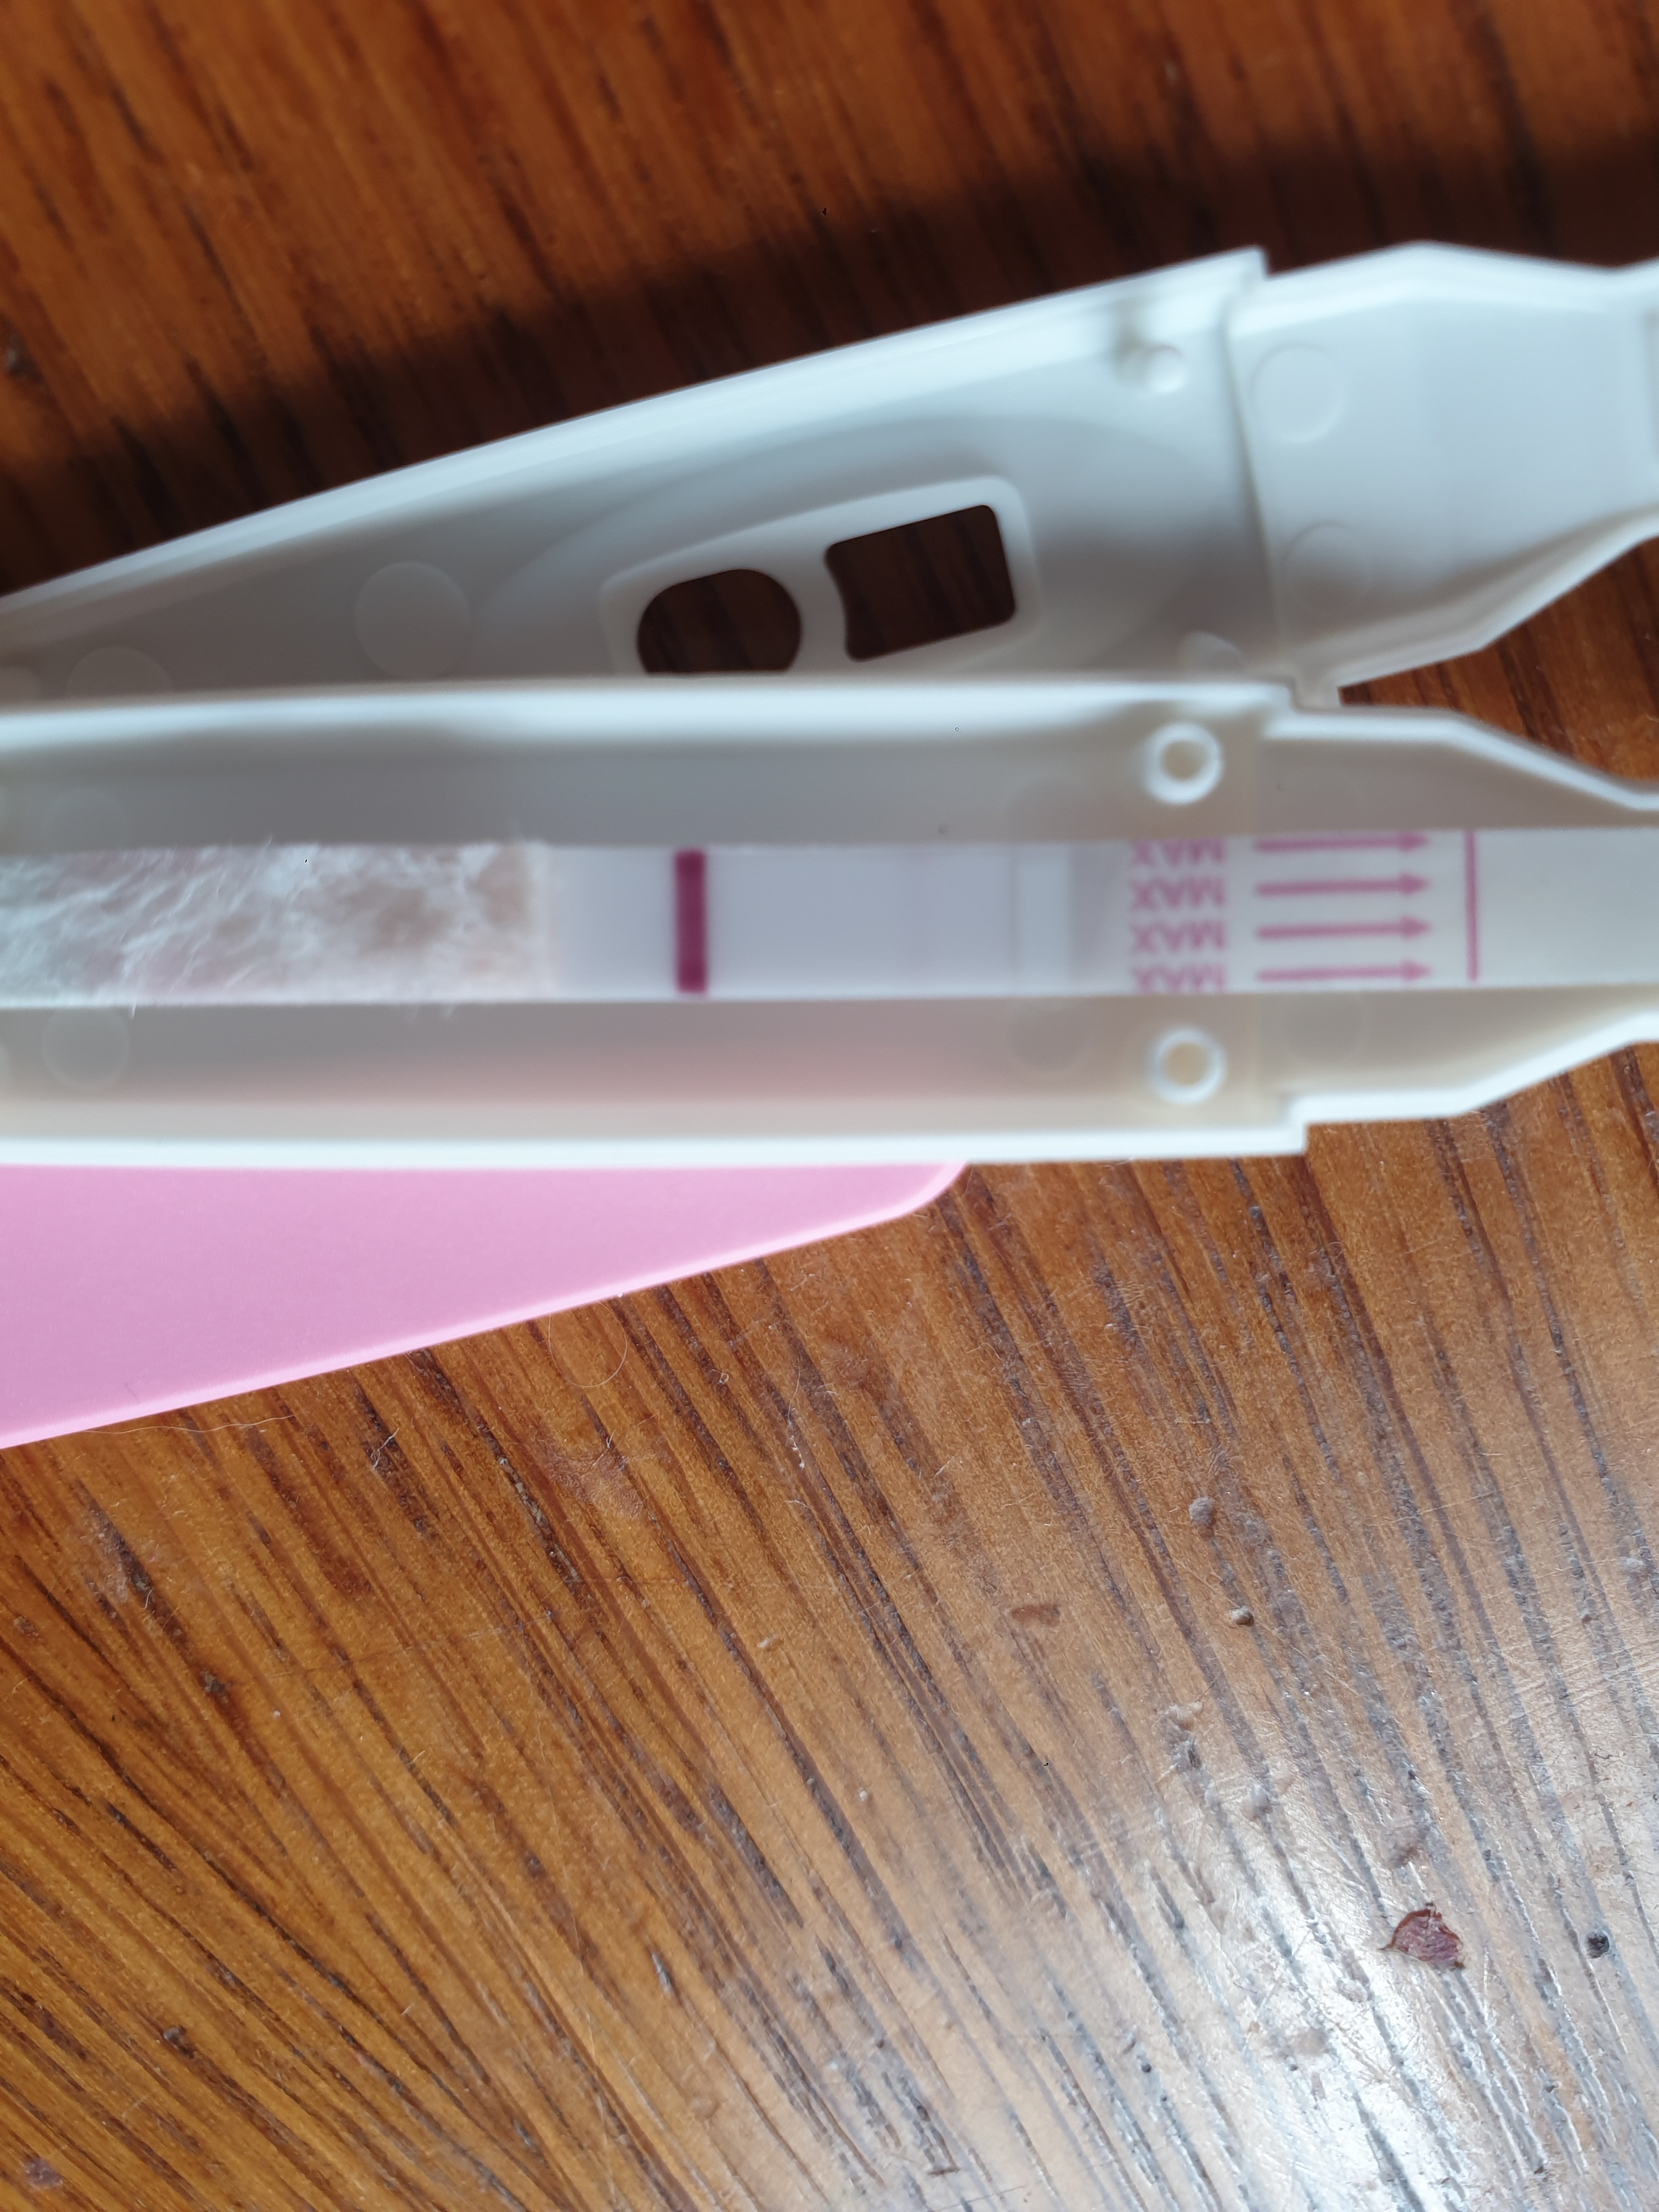 Taux HCG à 9dpo - Page : 3 - Tests et symptômes de grossesse ...